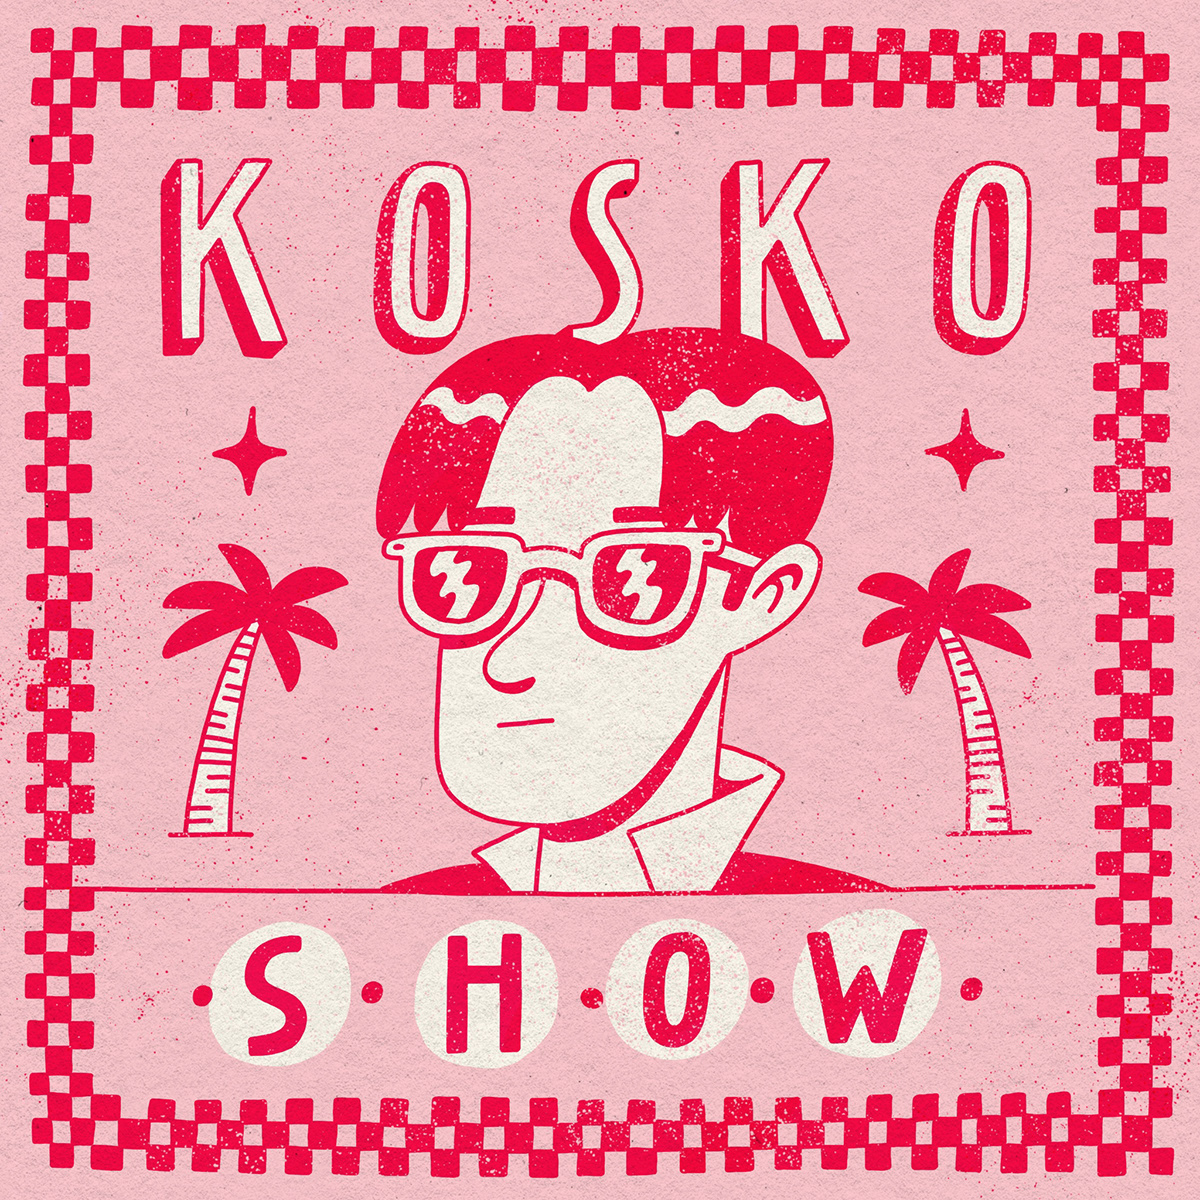 Album album cover art cover ILLUSTRATION  kosko music Picture Show